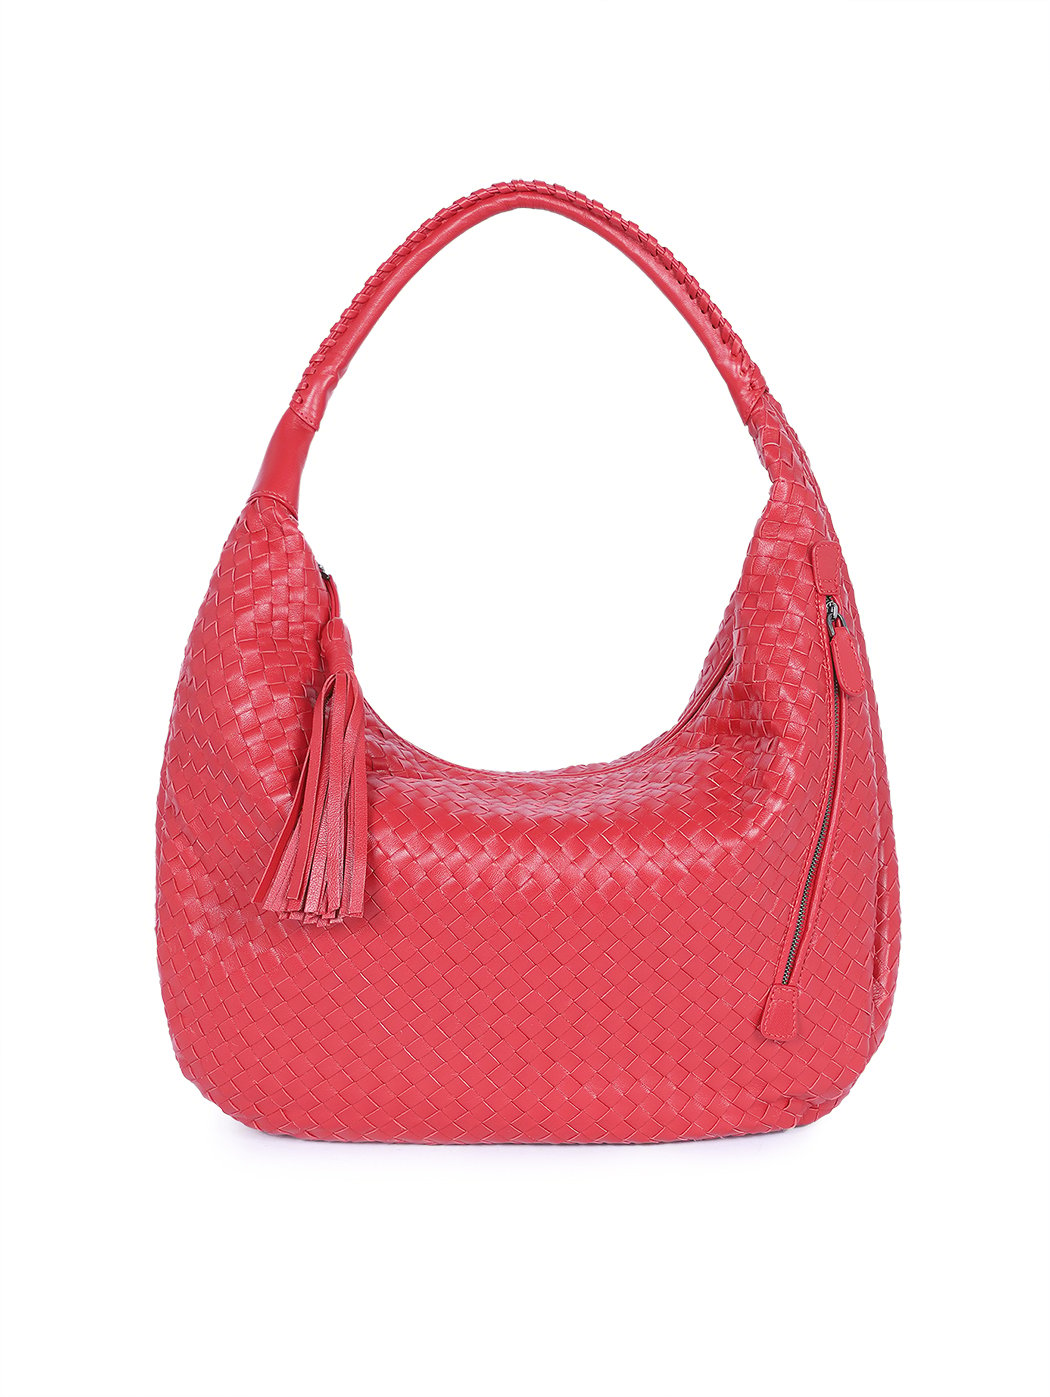 Плетеная сумка хобо коллекции Intrecci красного цвета